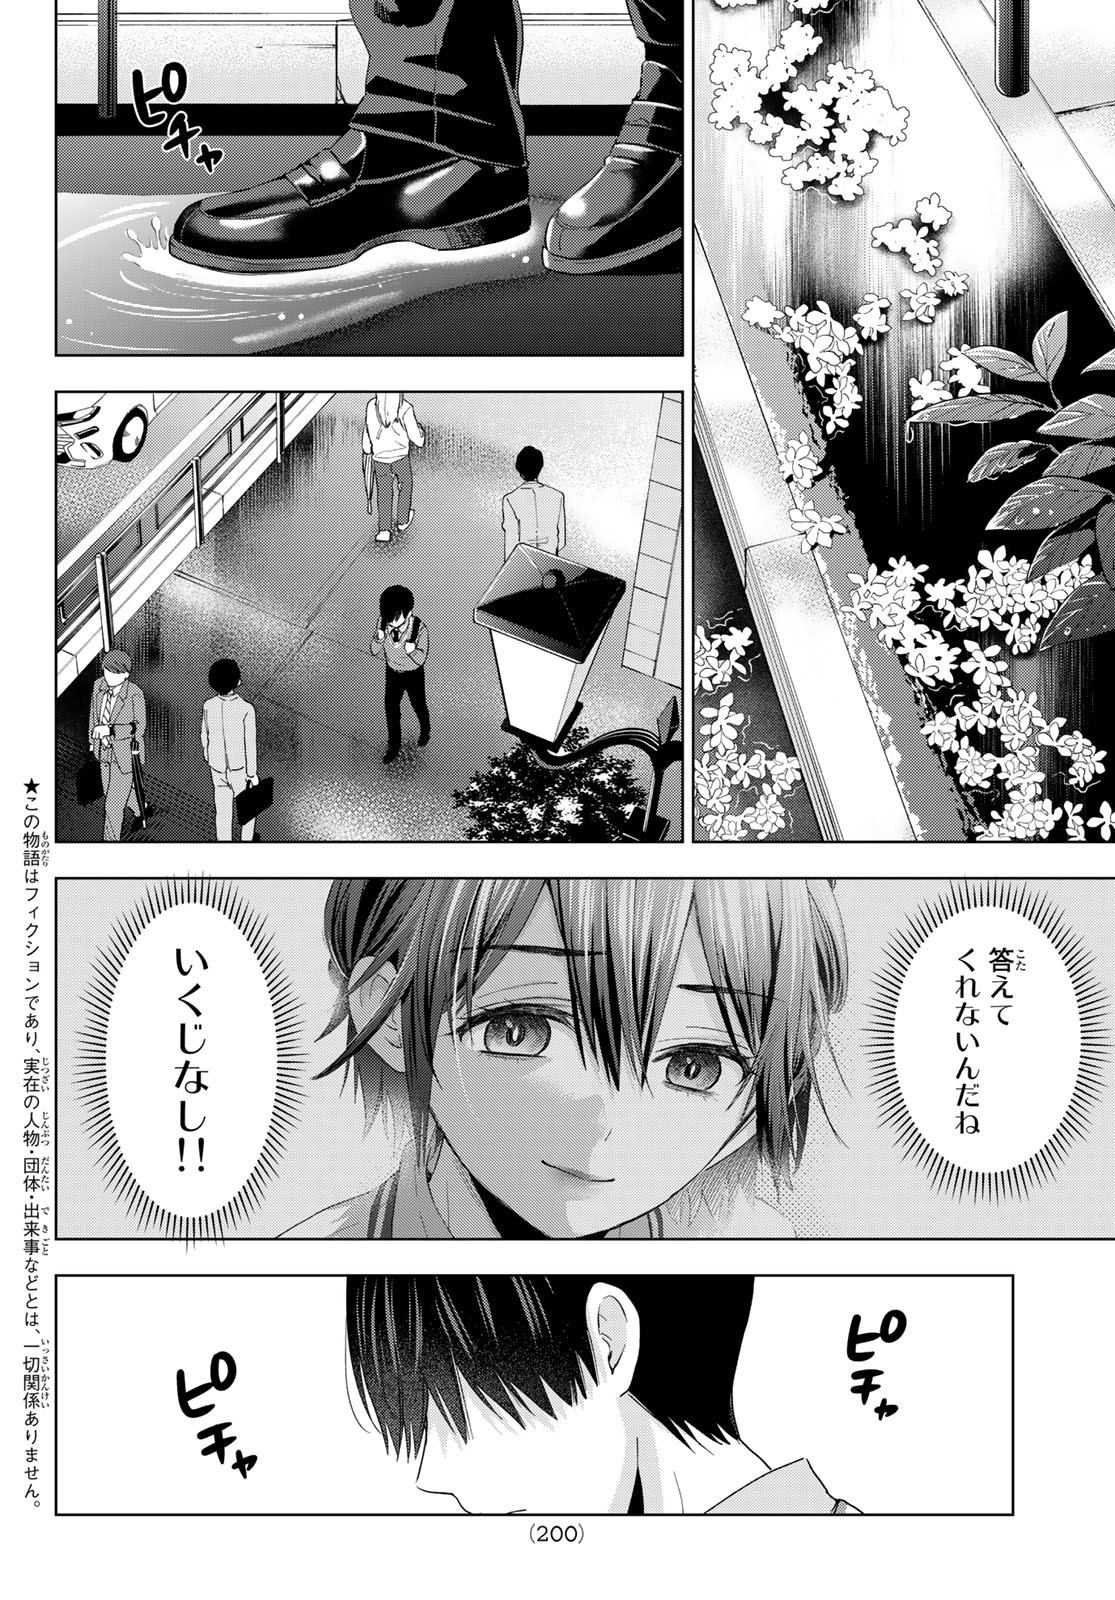 Kakkou no Iinazuke - Chapter 115 - Page 2